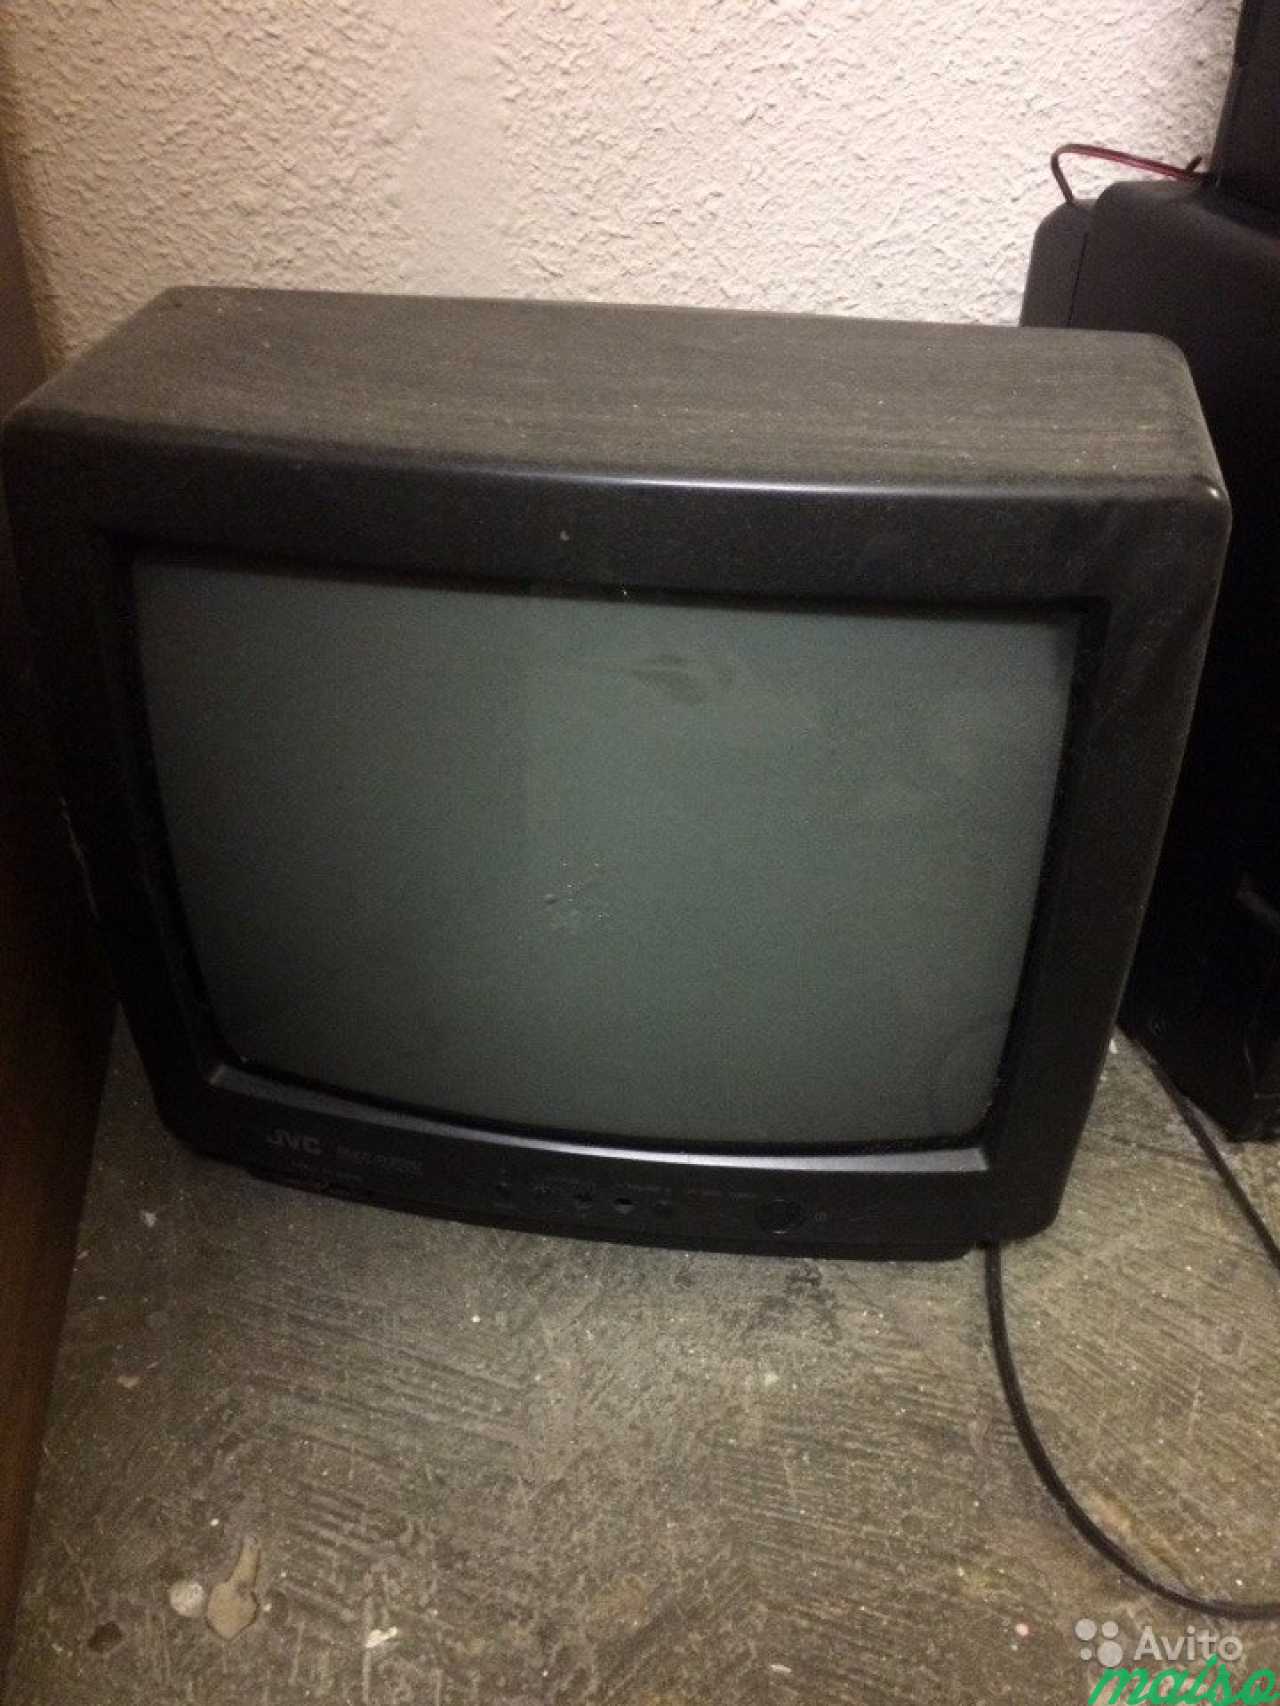 Бу телевизоры СПБ. Маленький телевизор купить в СПБ.